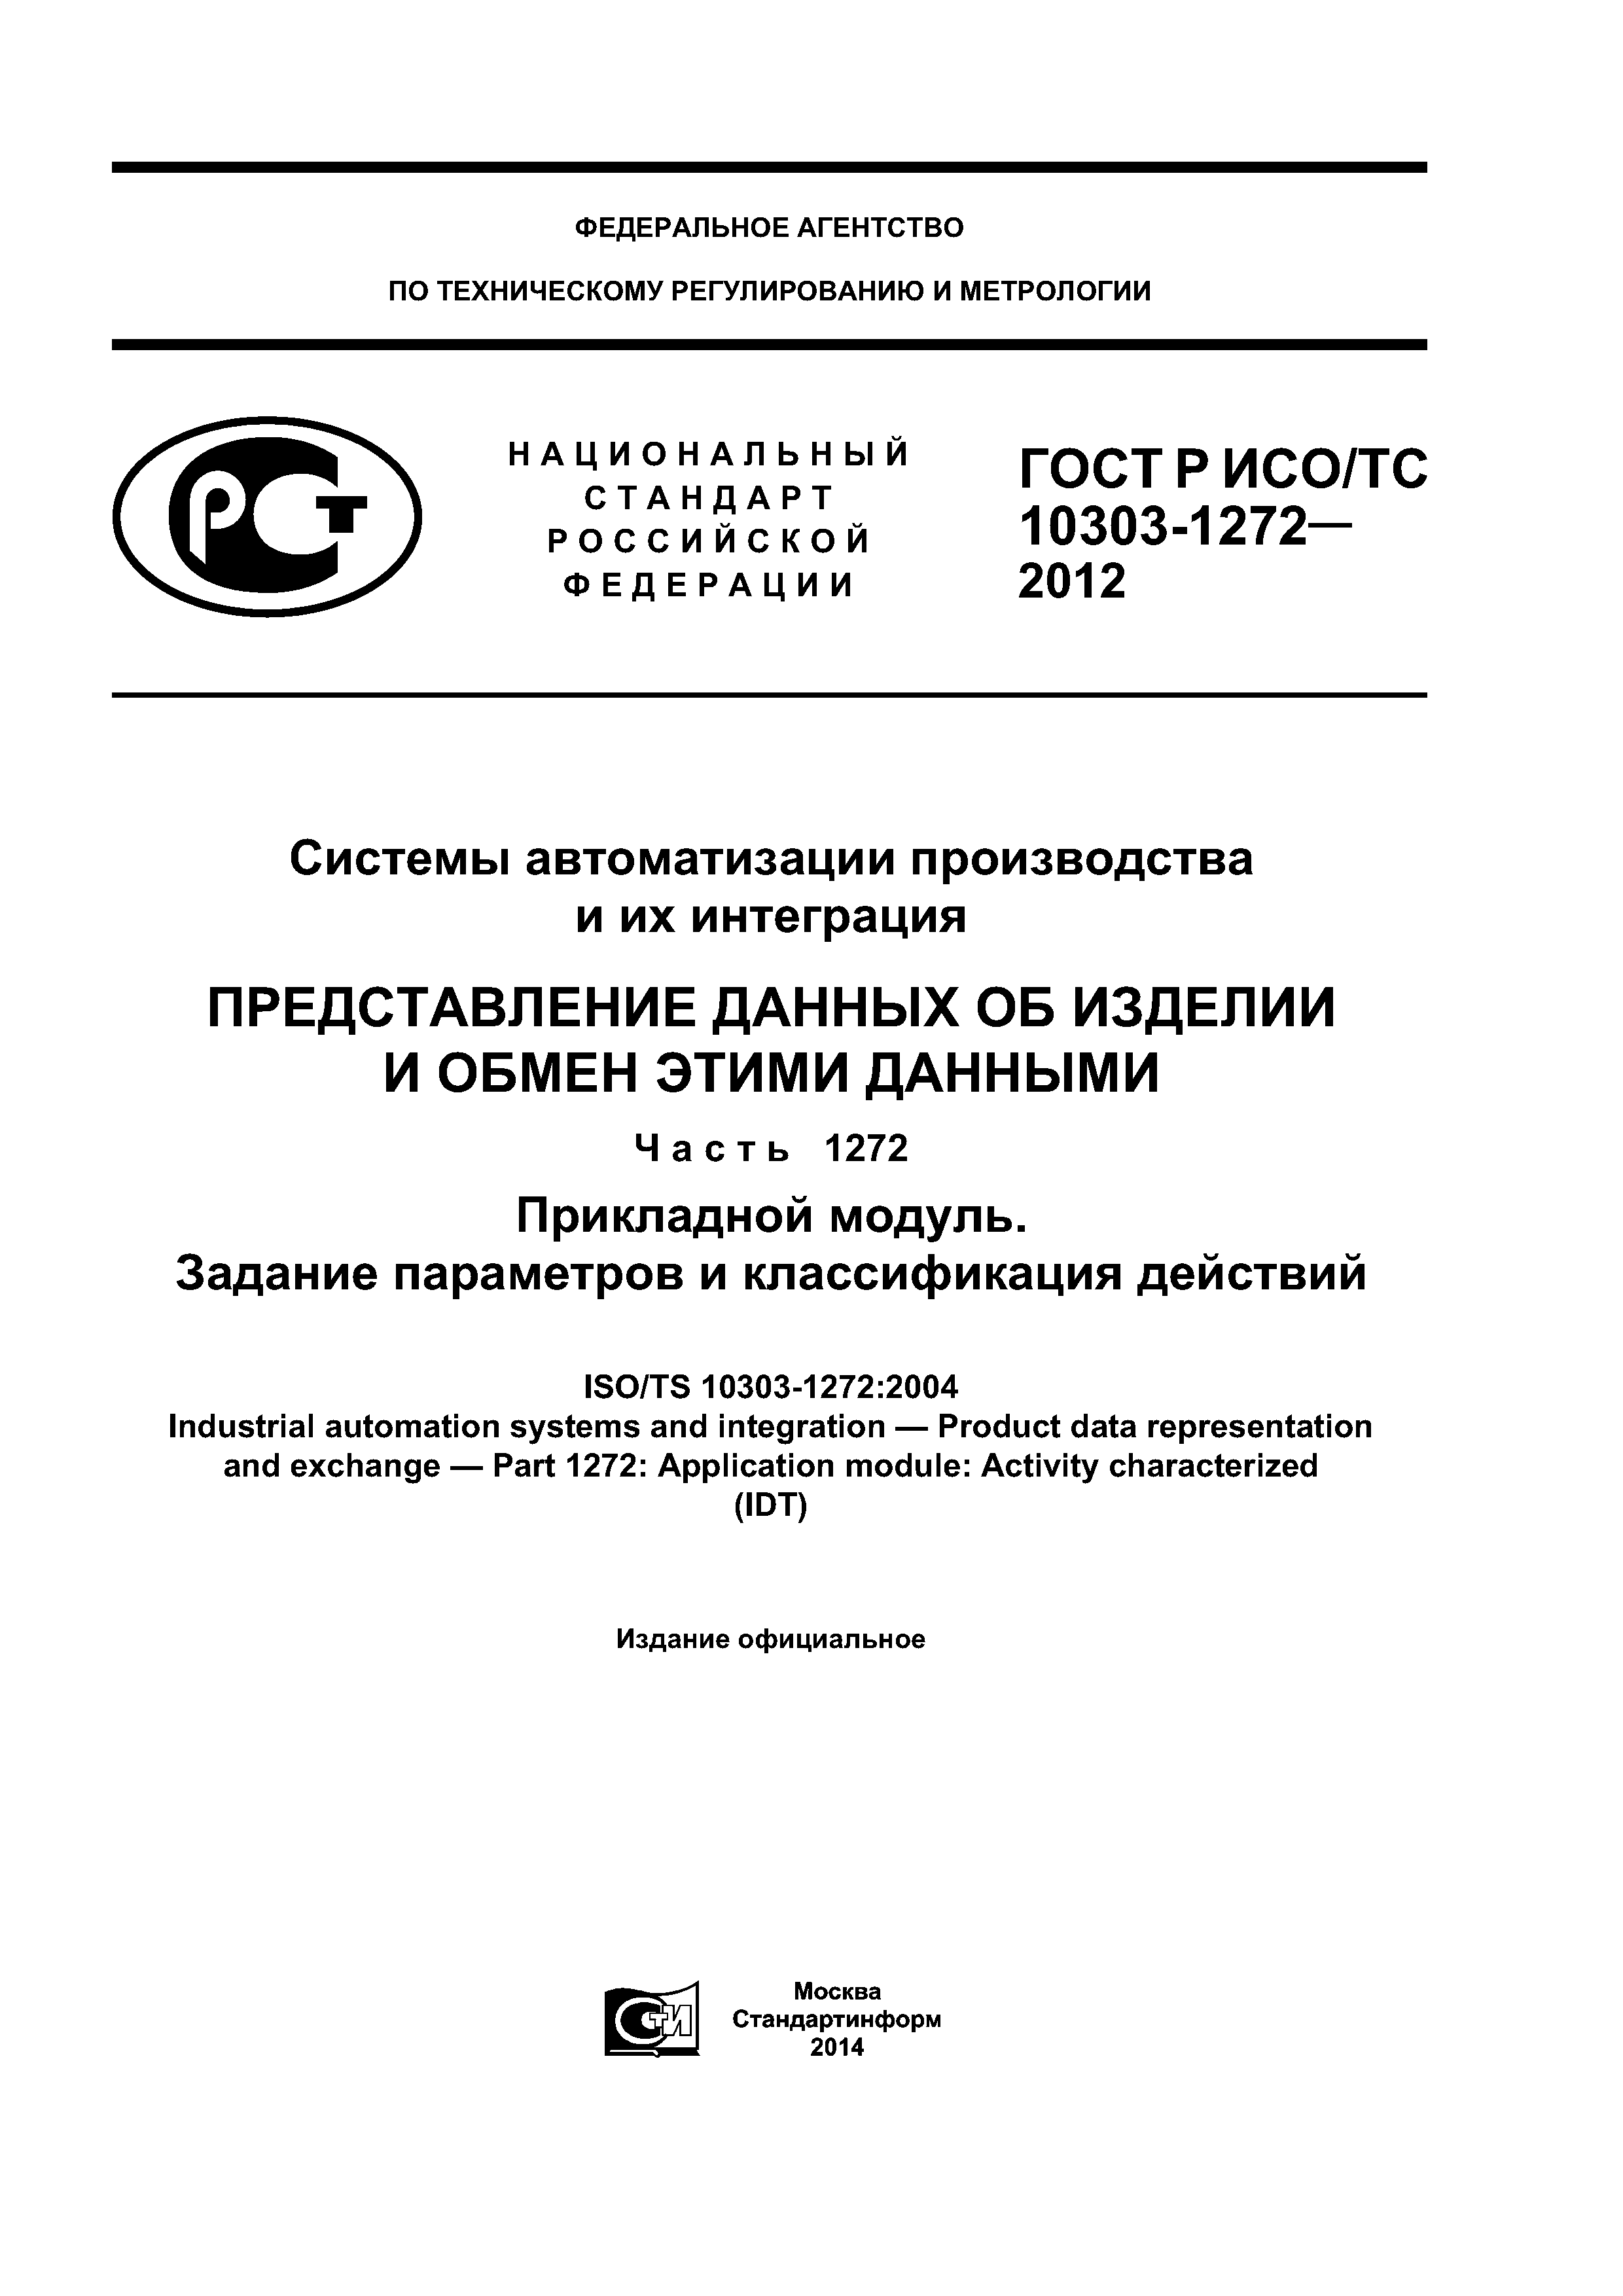 ГОСТ Р ИСО/ТС 10303-1272-2012